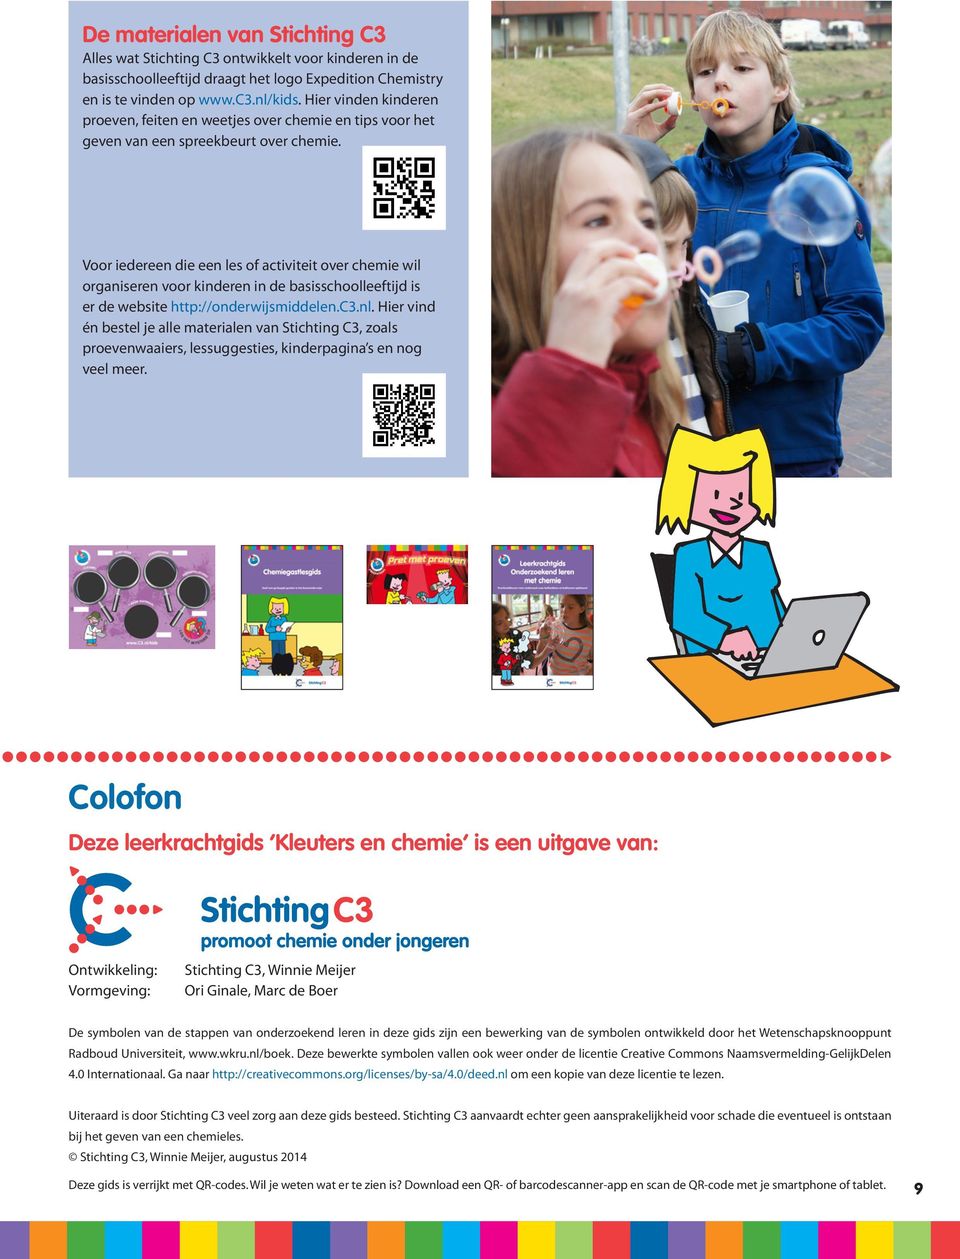 Voor iedereen die een les of activiteit over chemie wil organiseren voor kinderen in de basisschoolleeftijd is er de website http://onderwijsmiddelen.c3.nl.